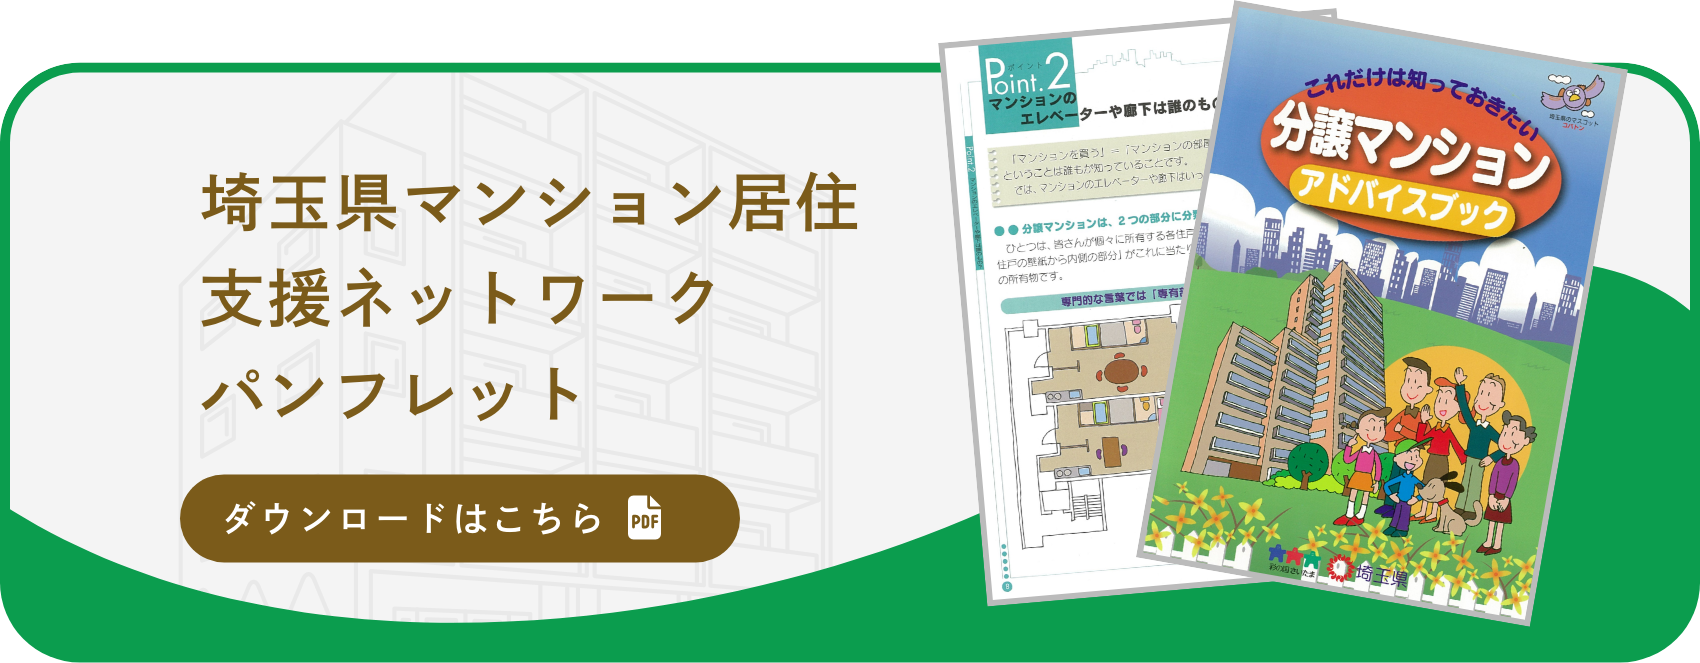 埼玉県マンション居住支援ネットワークパンフレットのダウンロードはこちら